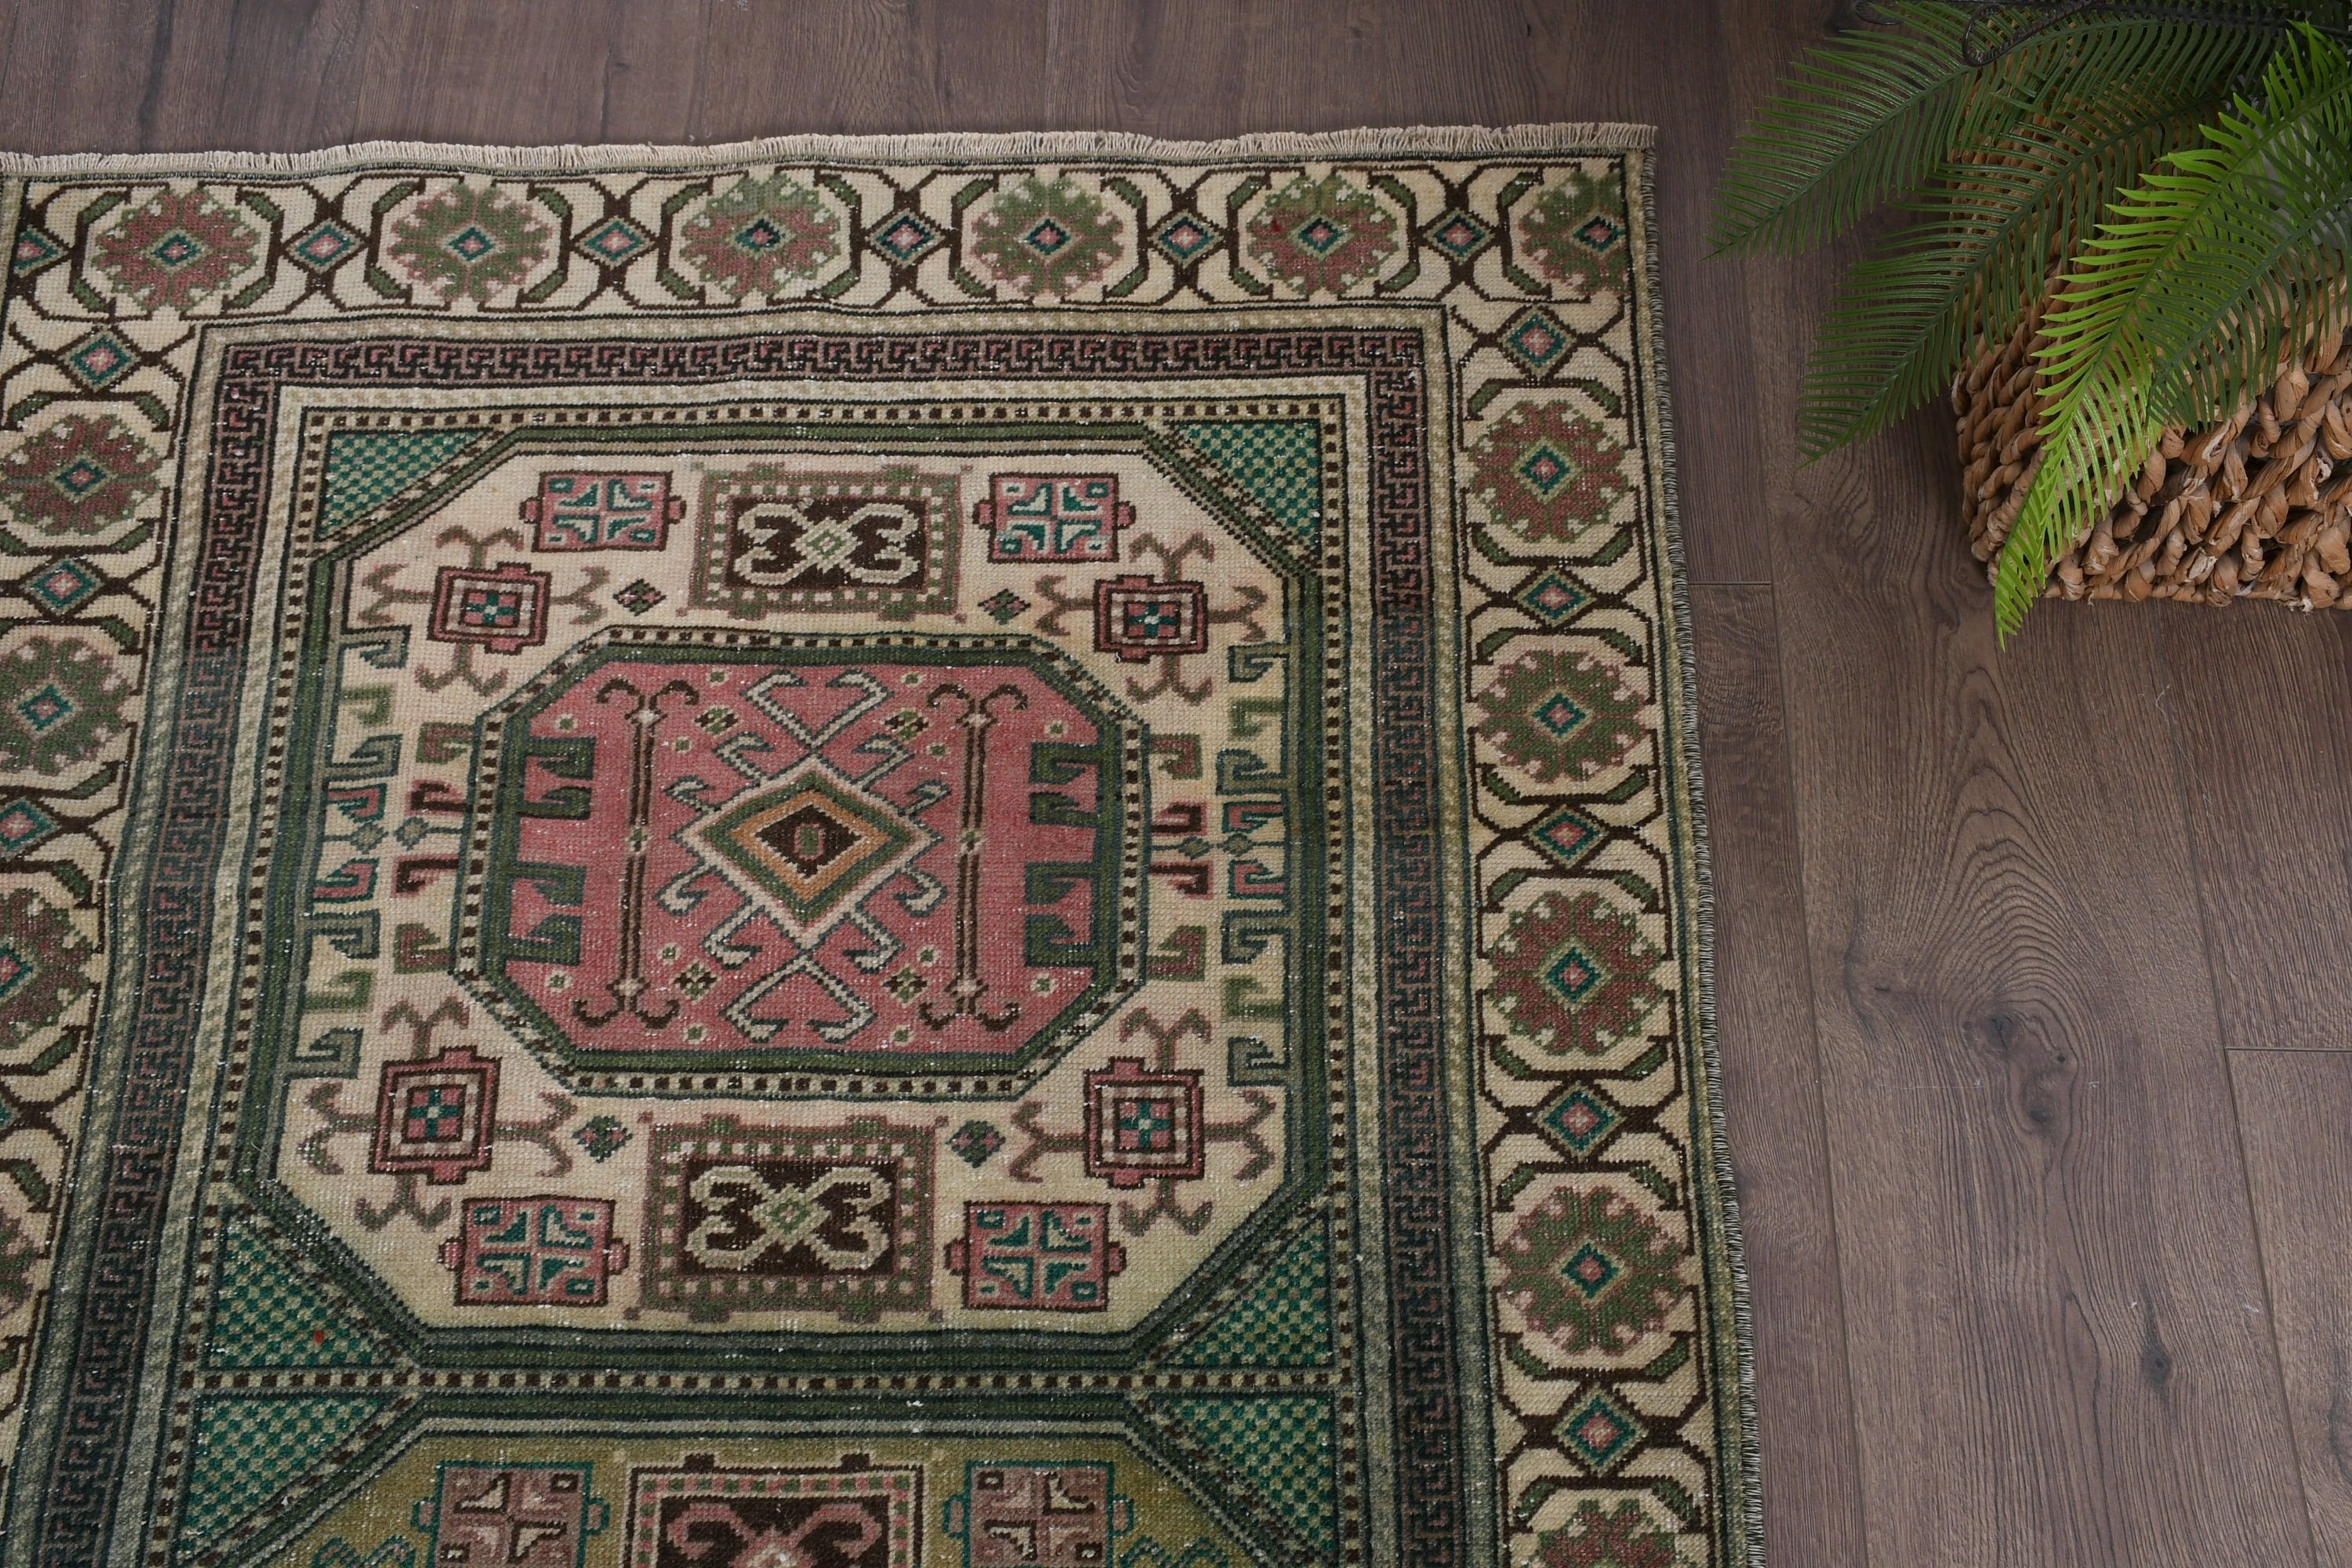 Vintage Rug, Kitchen Rug, Floor Rugs, Turkish Rug, Green Floor Rugs, 2.9x6.1 ft Accent Rugs, Oriental Rug, Rugs for Bedroom, Bedroom Rug